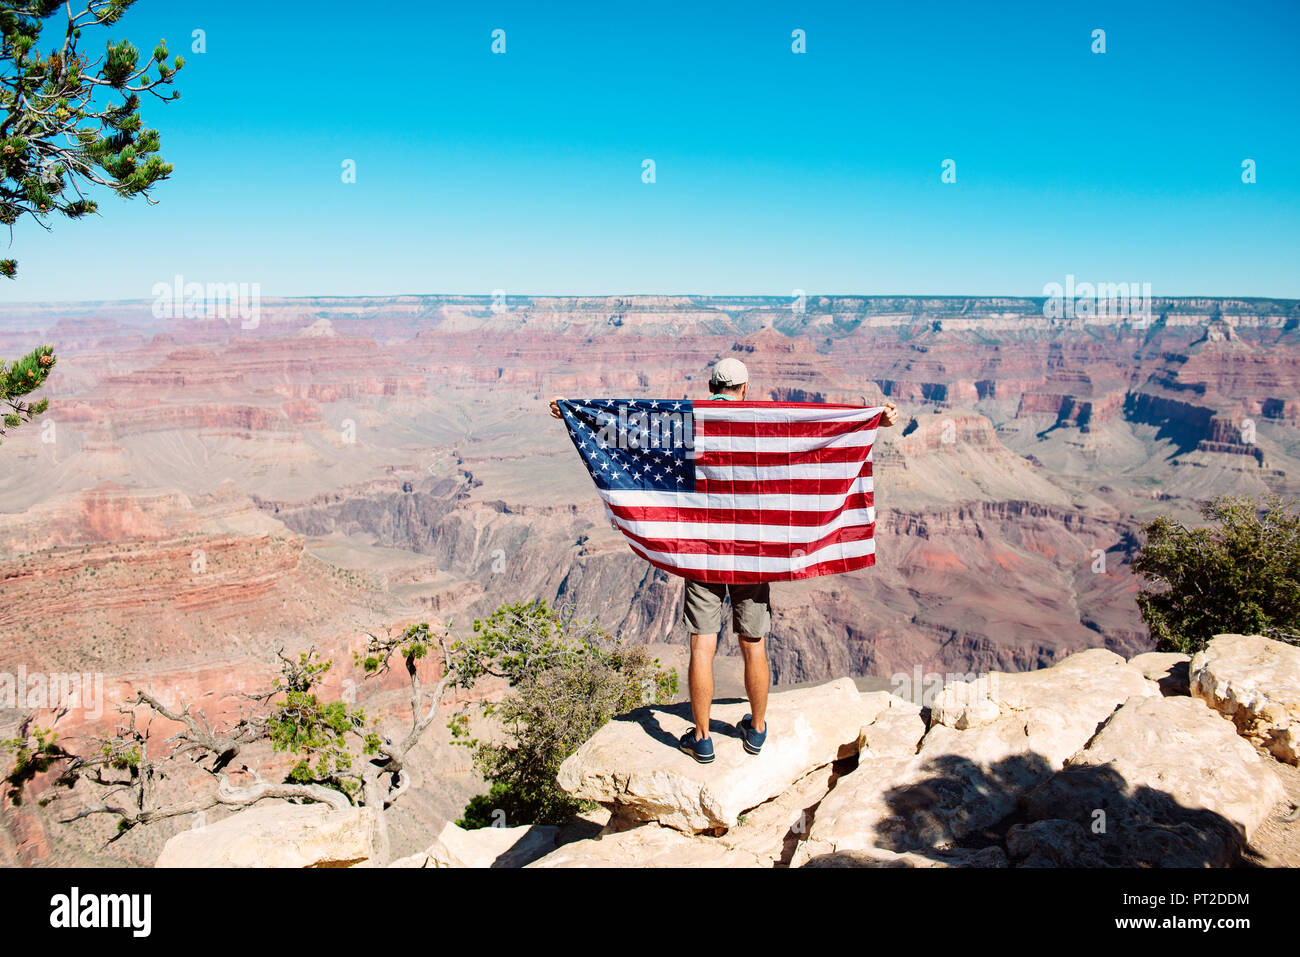 Познакомимся америка. Американский флаг в пустыне Аризона. Американский штат Аризона с флагом Америки на доме. Прическа каньон американцев. Гранд каньон Америка форма одежды.